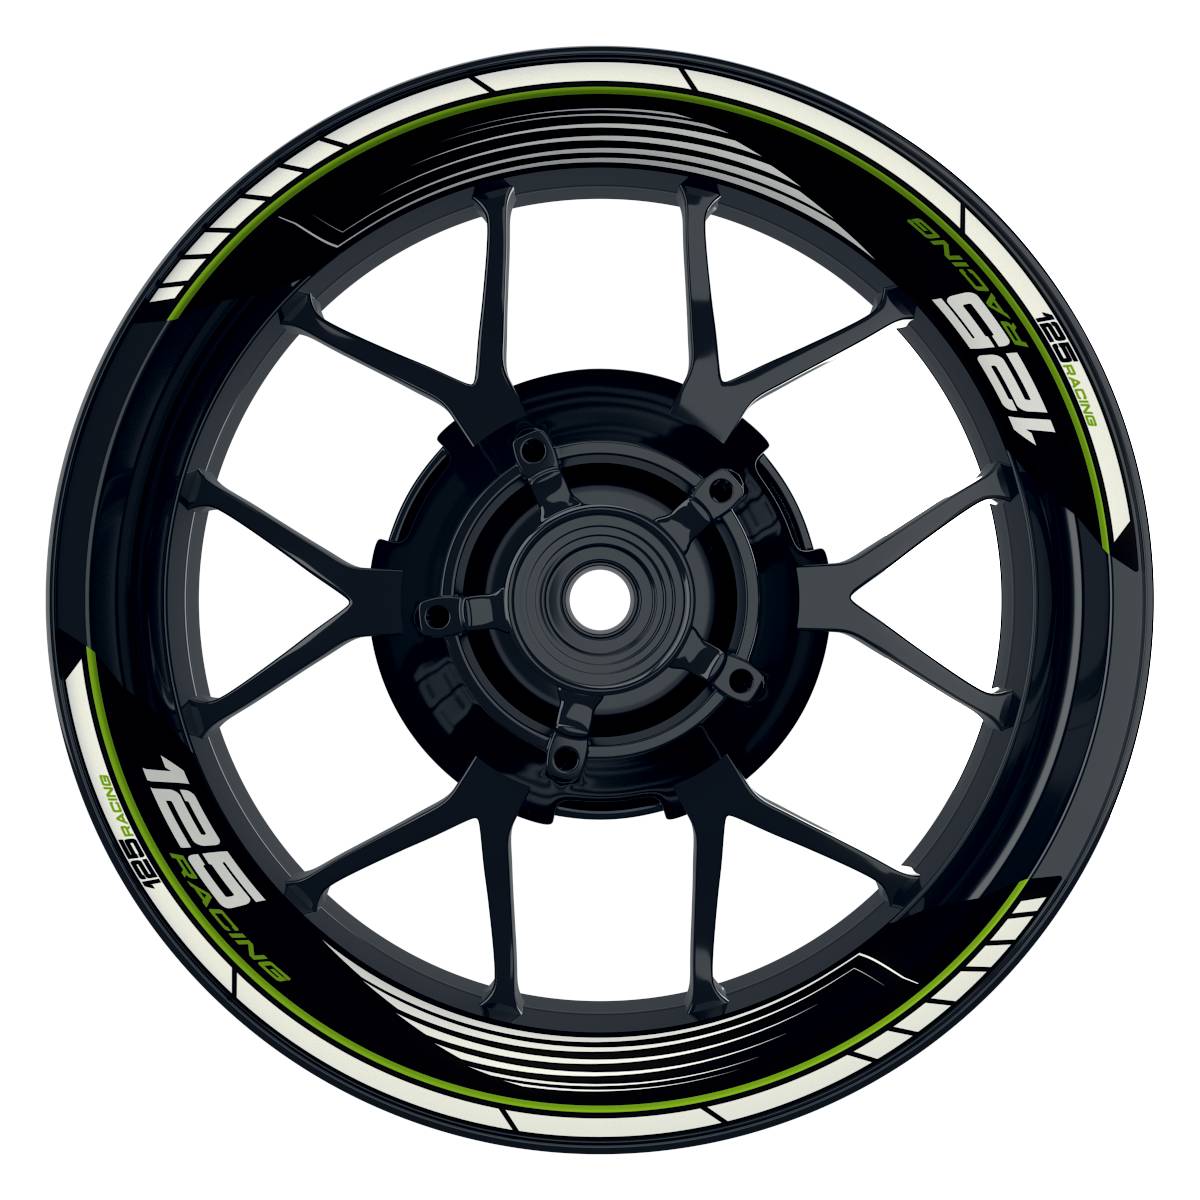 KTM Racing 125 SAW schwarz gruen Frontansicht